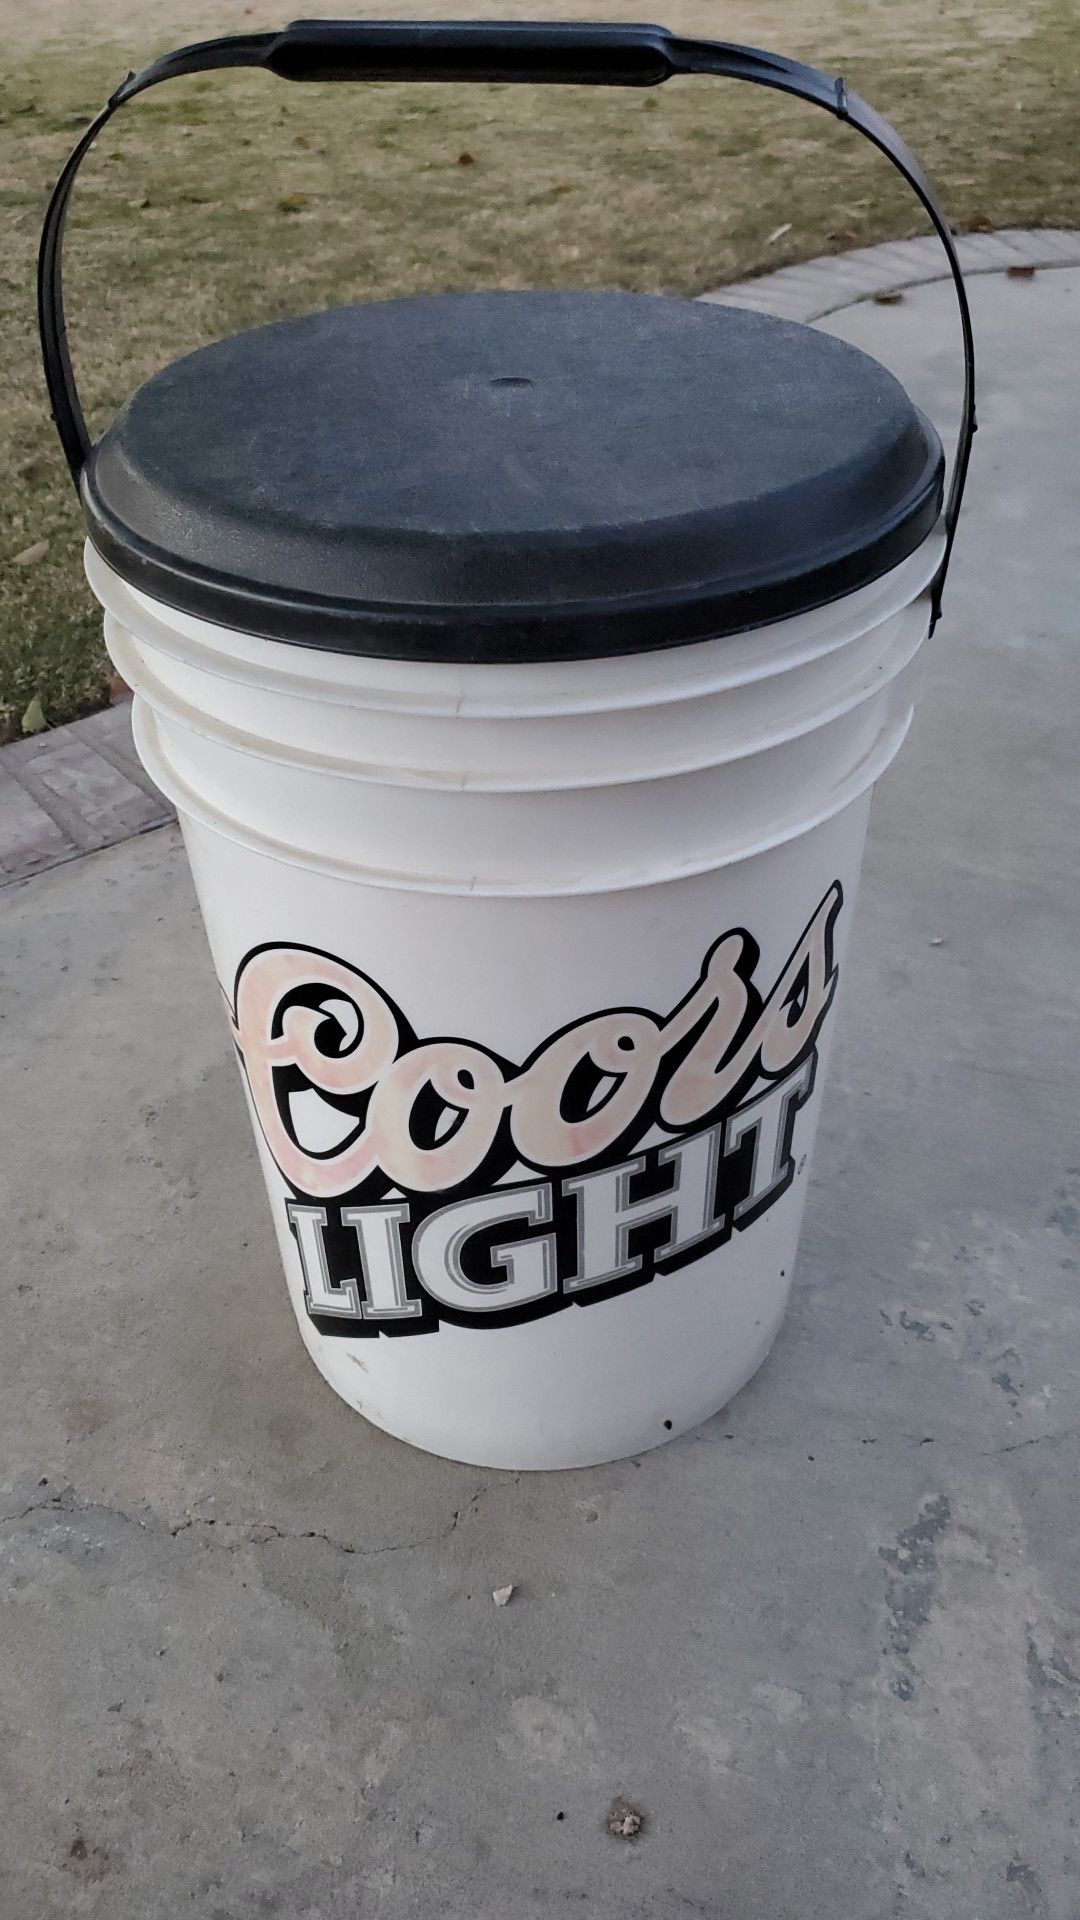 Coors Light bucket cooler